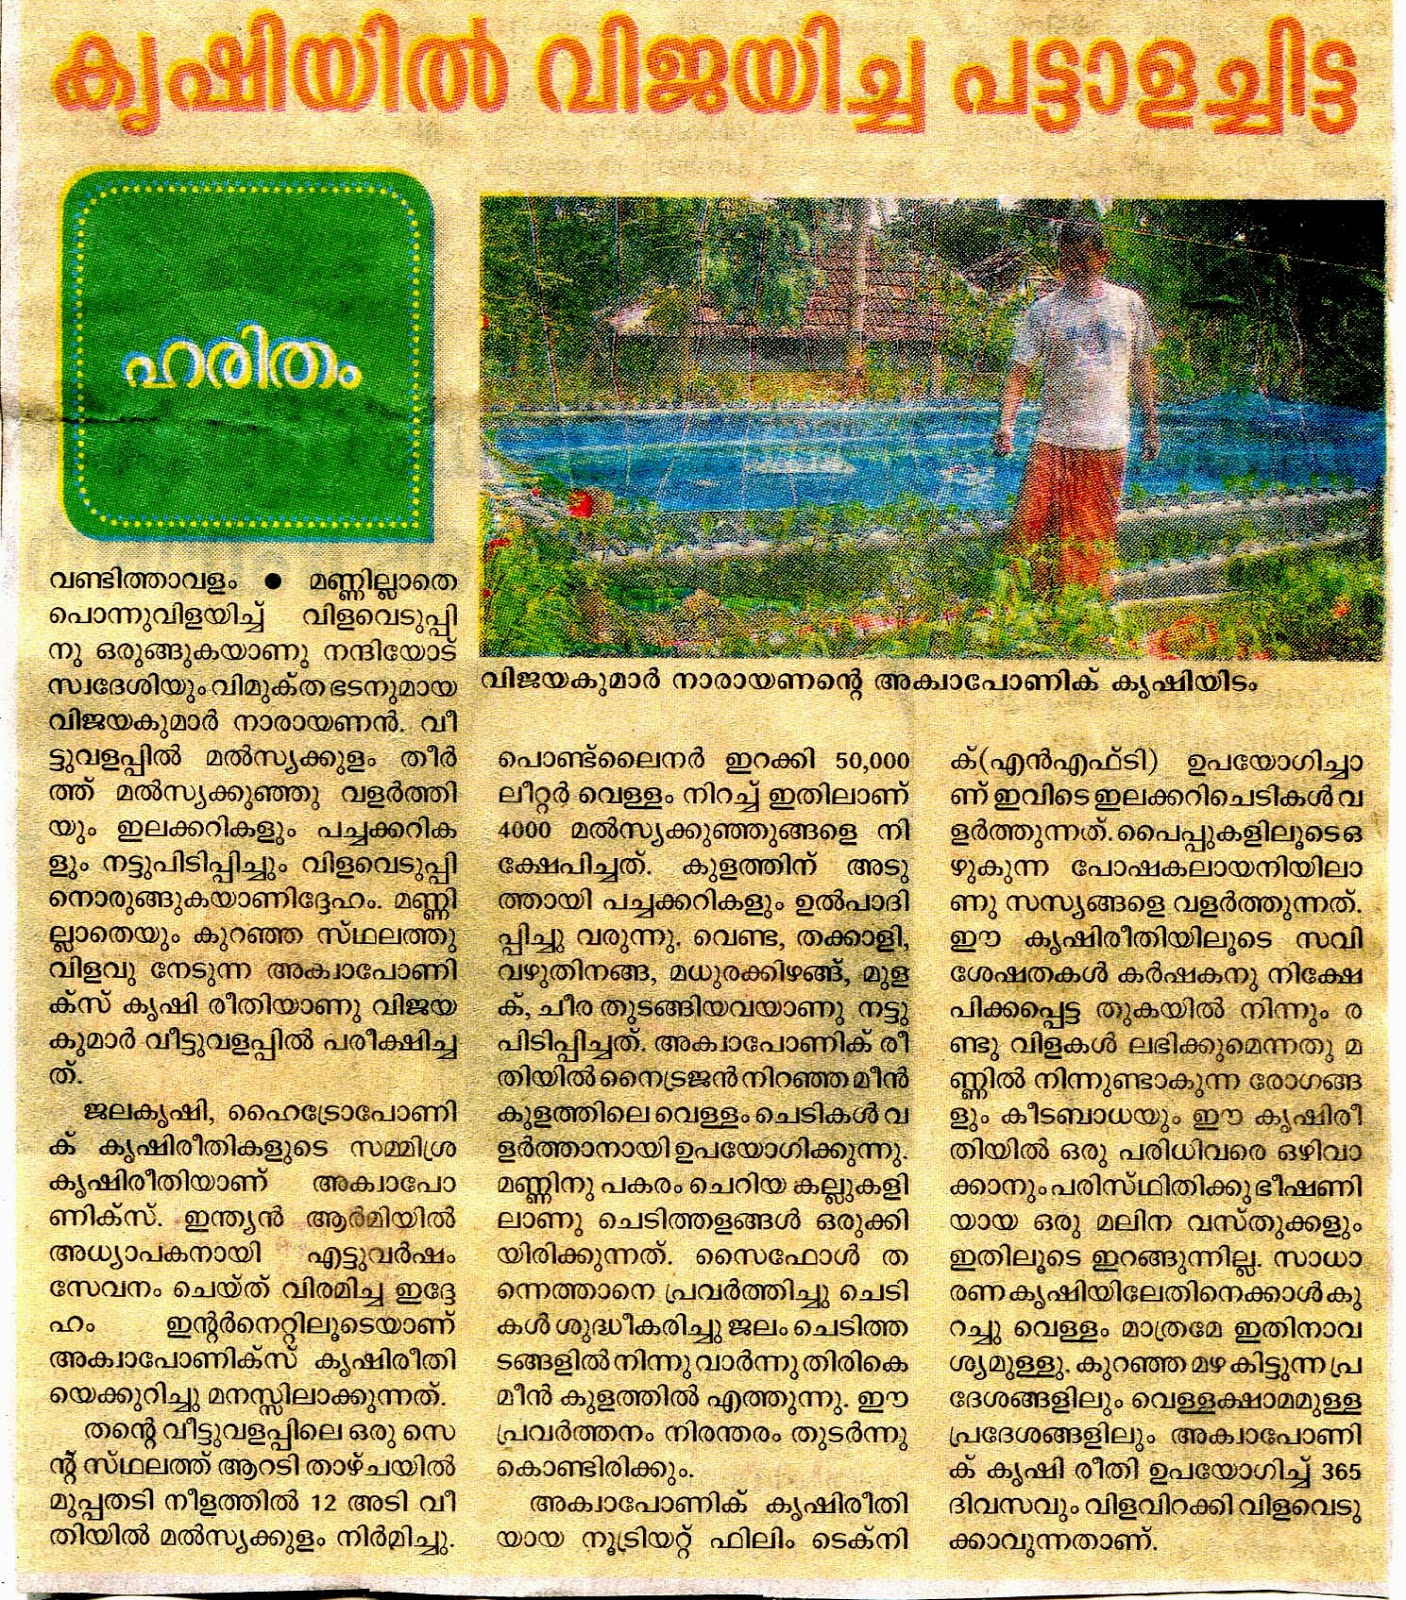 Nanniode Aquaponics RDC on news - press report Malayala Manorama 